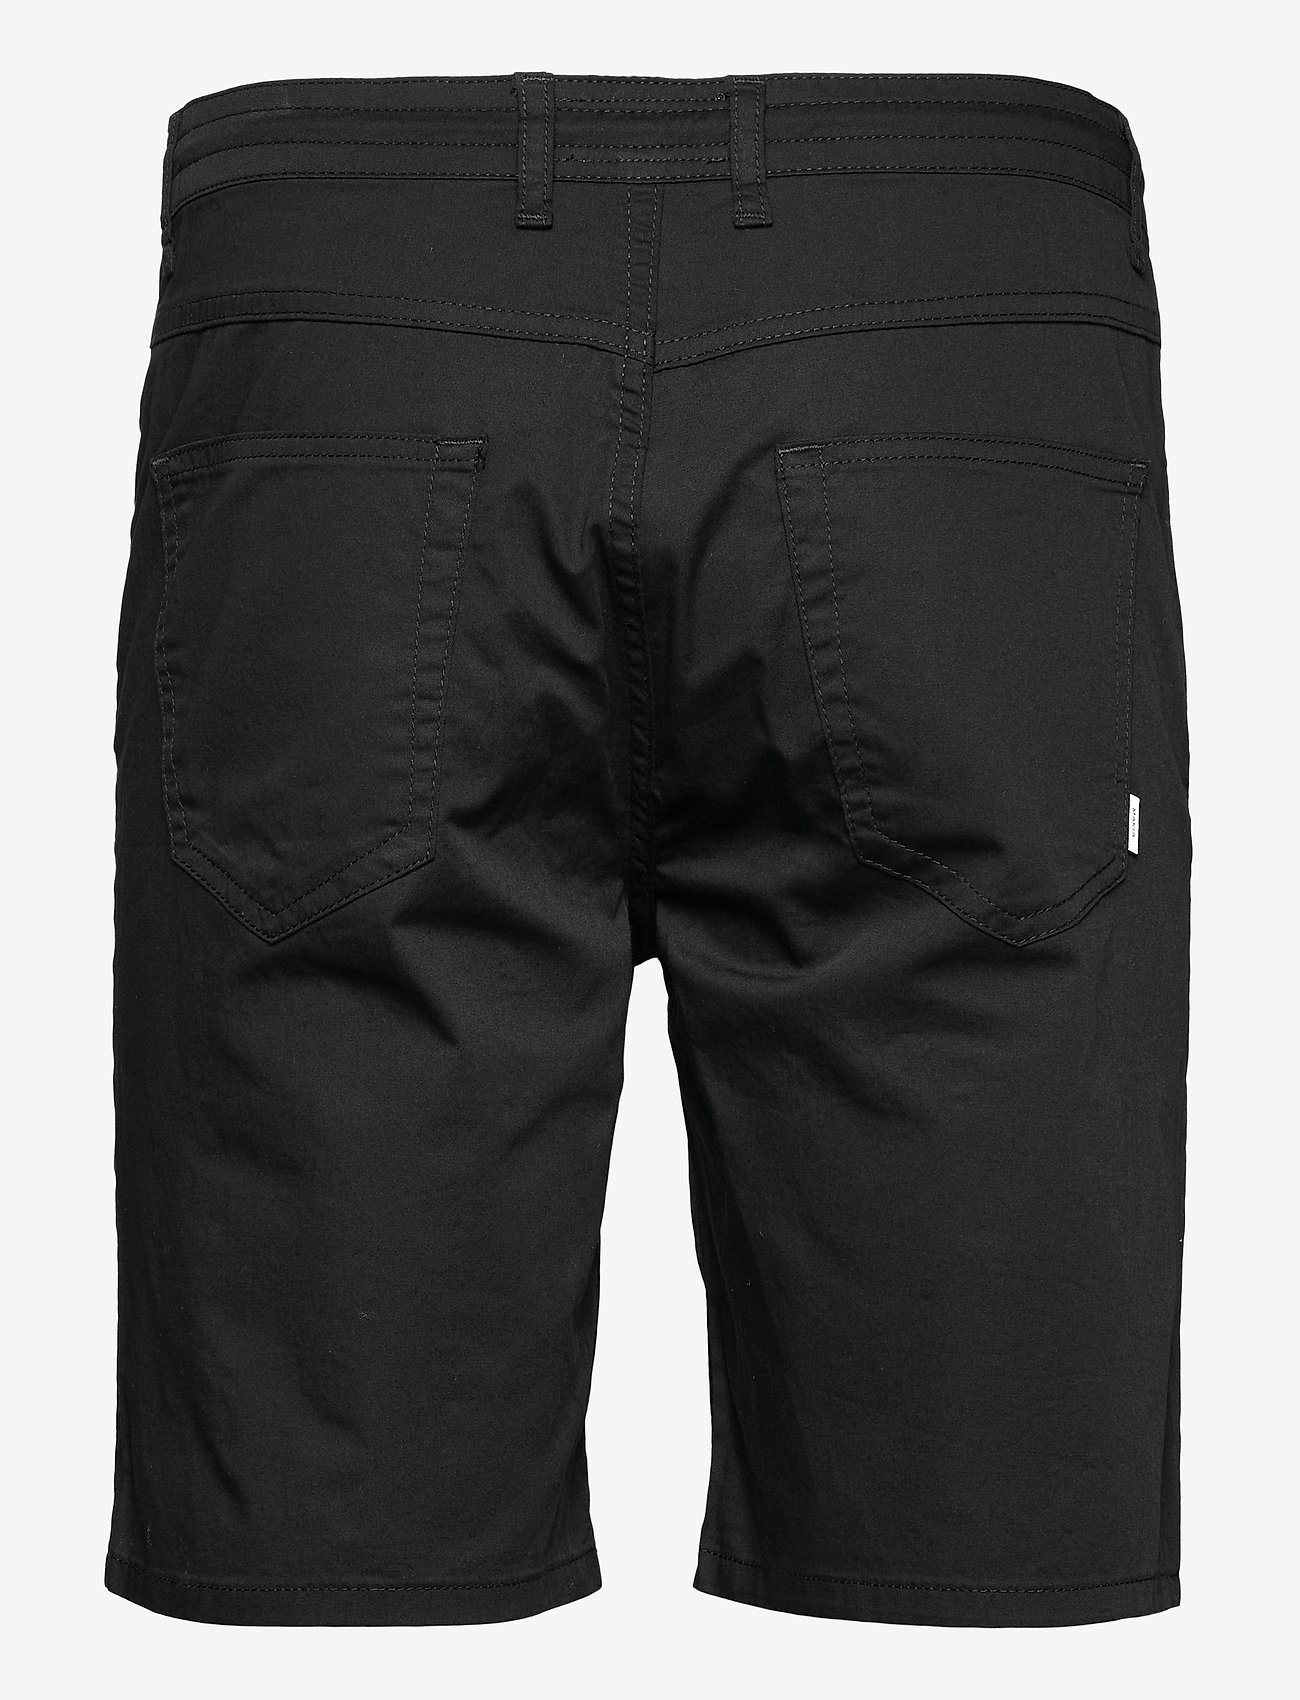 Makia - Border Shorts - „chino“ stiliaus šortai - black - 1